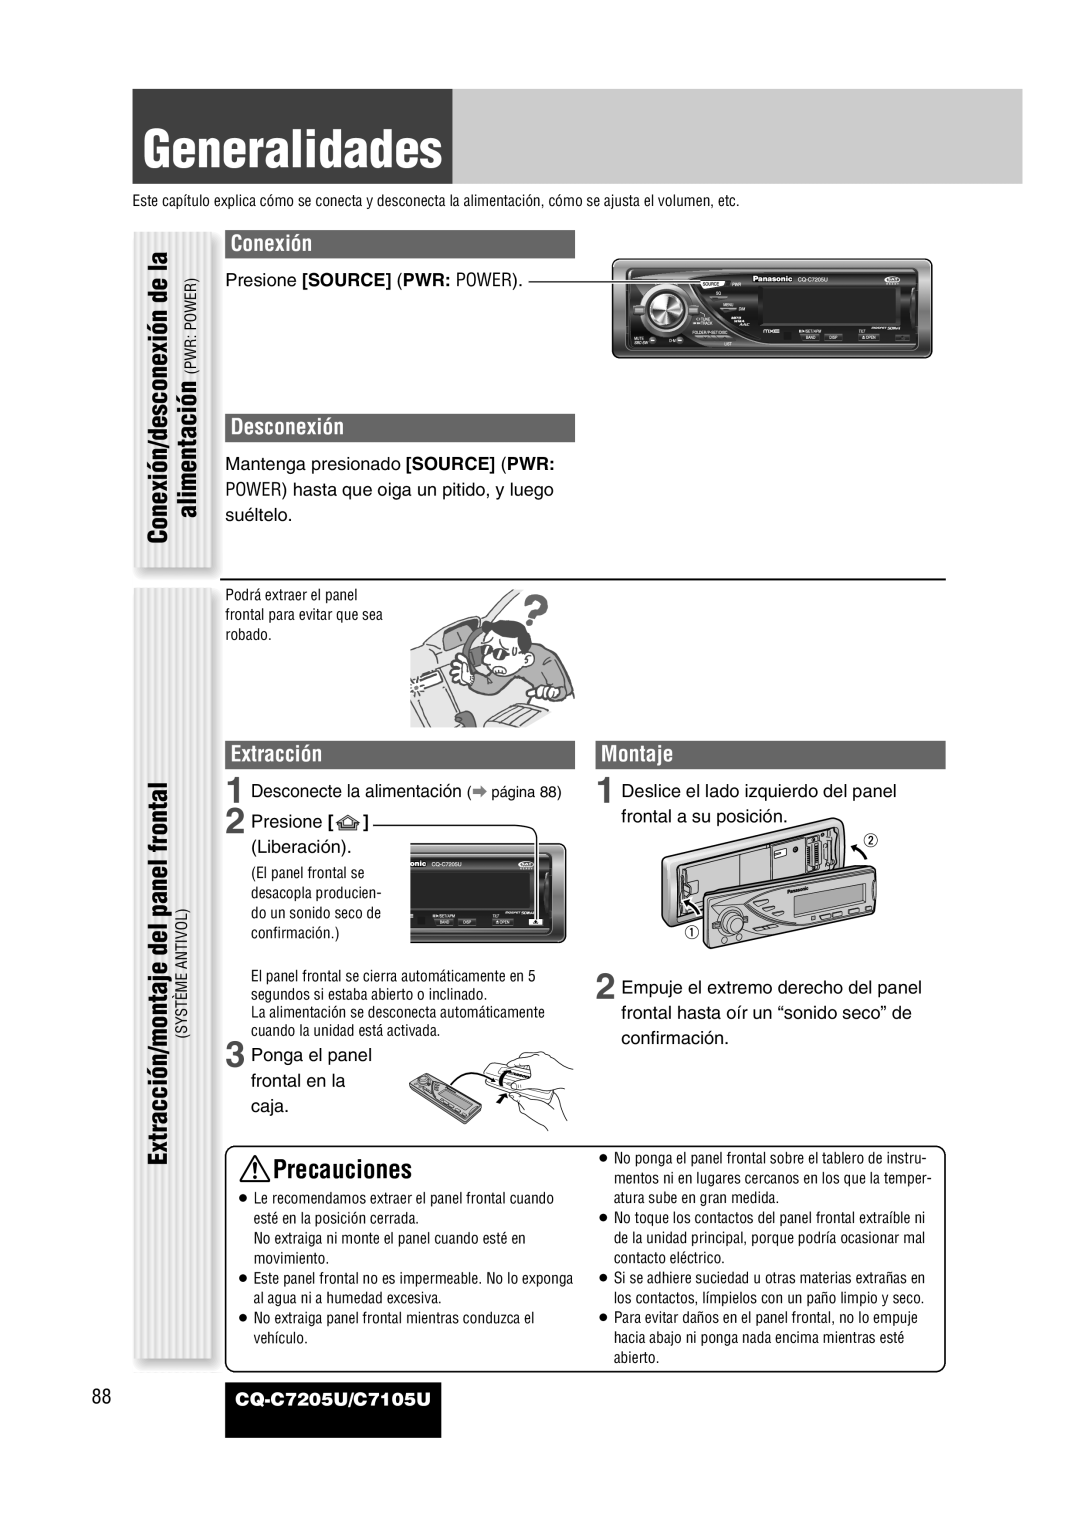 Panasonic CQ-C7205U Generalidades, alimentación PWR POWER, Precauciones, Conexión/desconexión de la, Desconexión, Montaje 